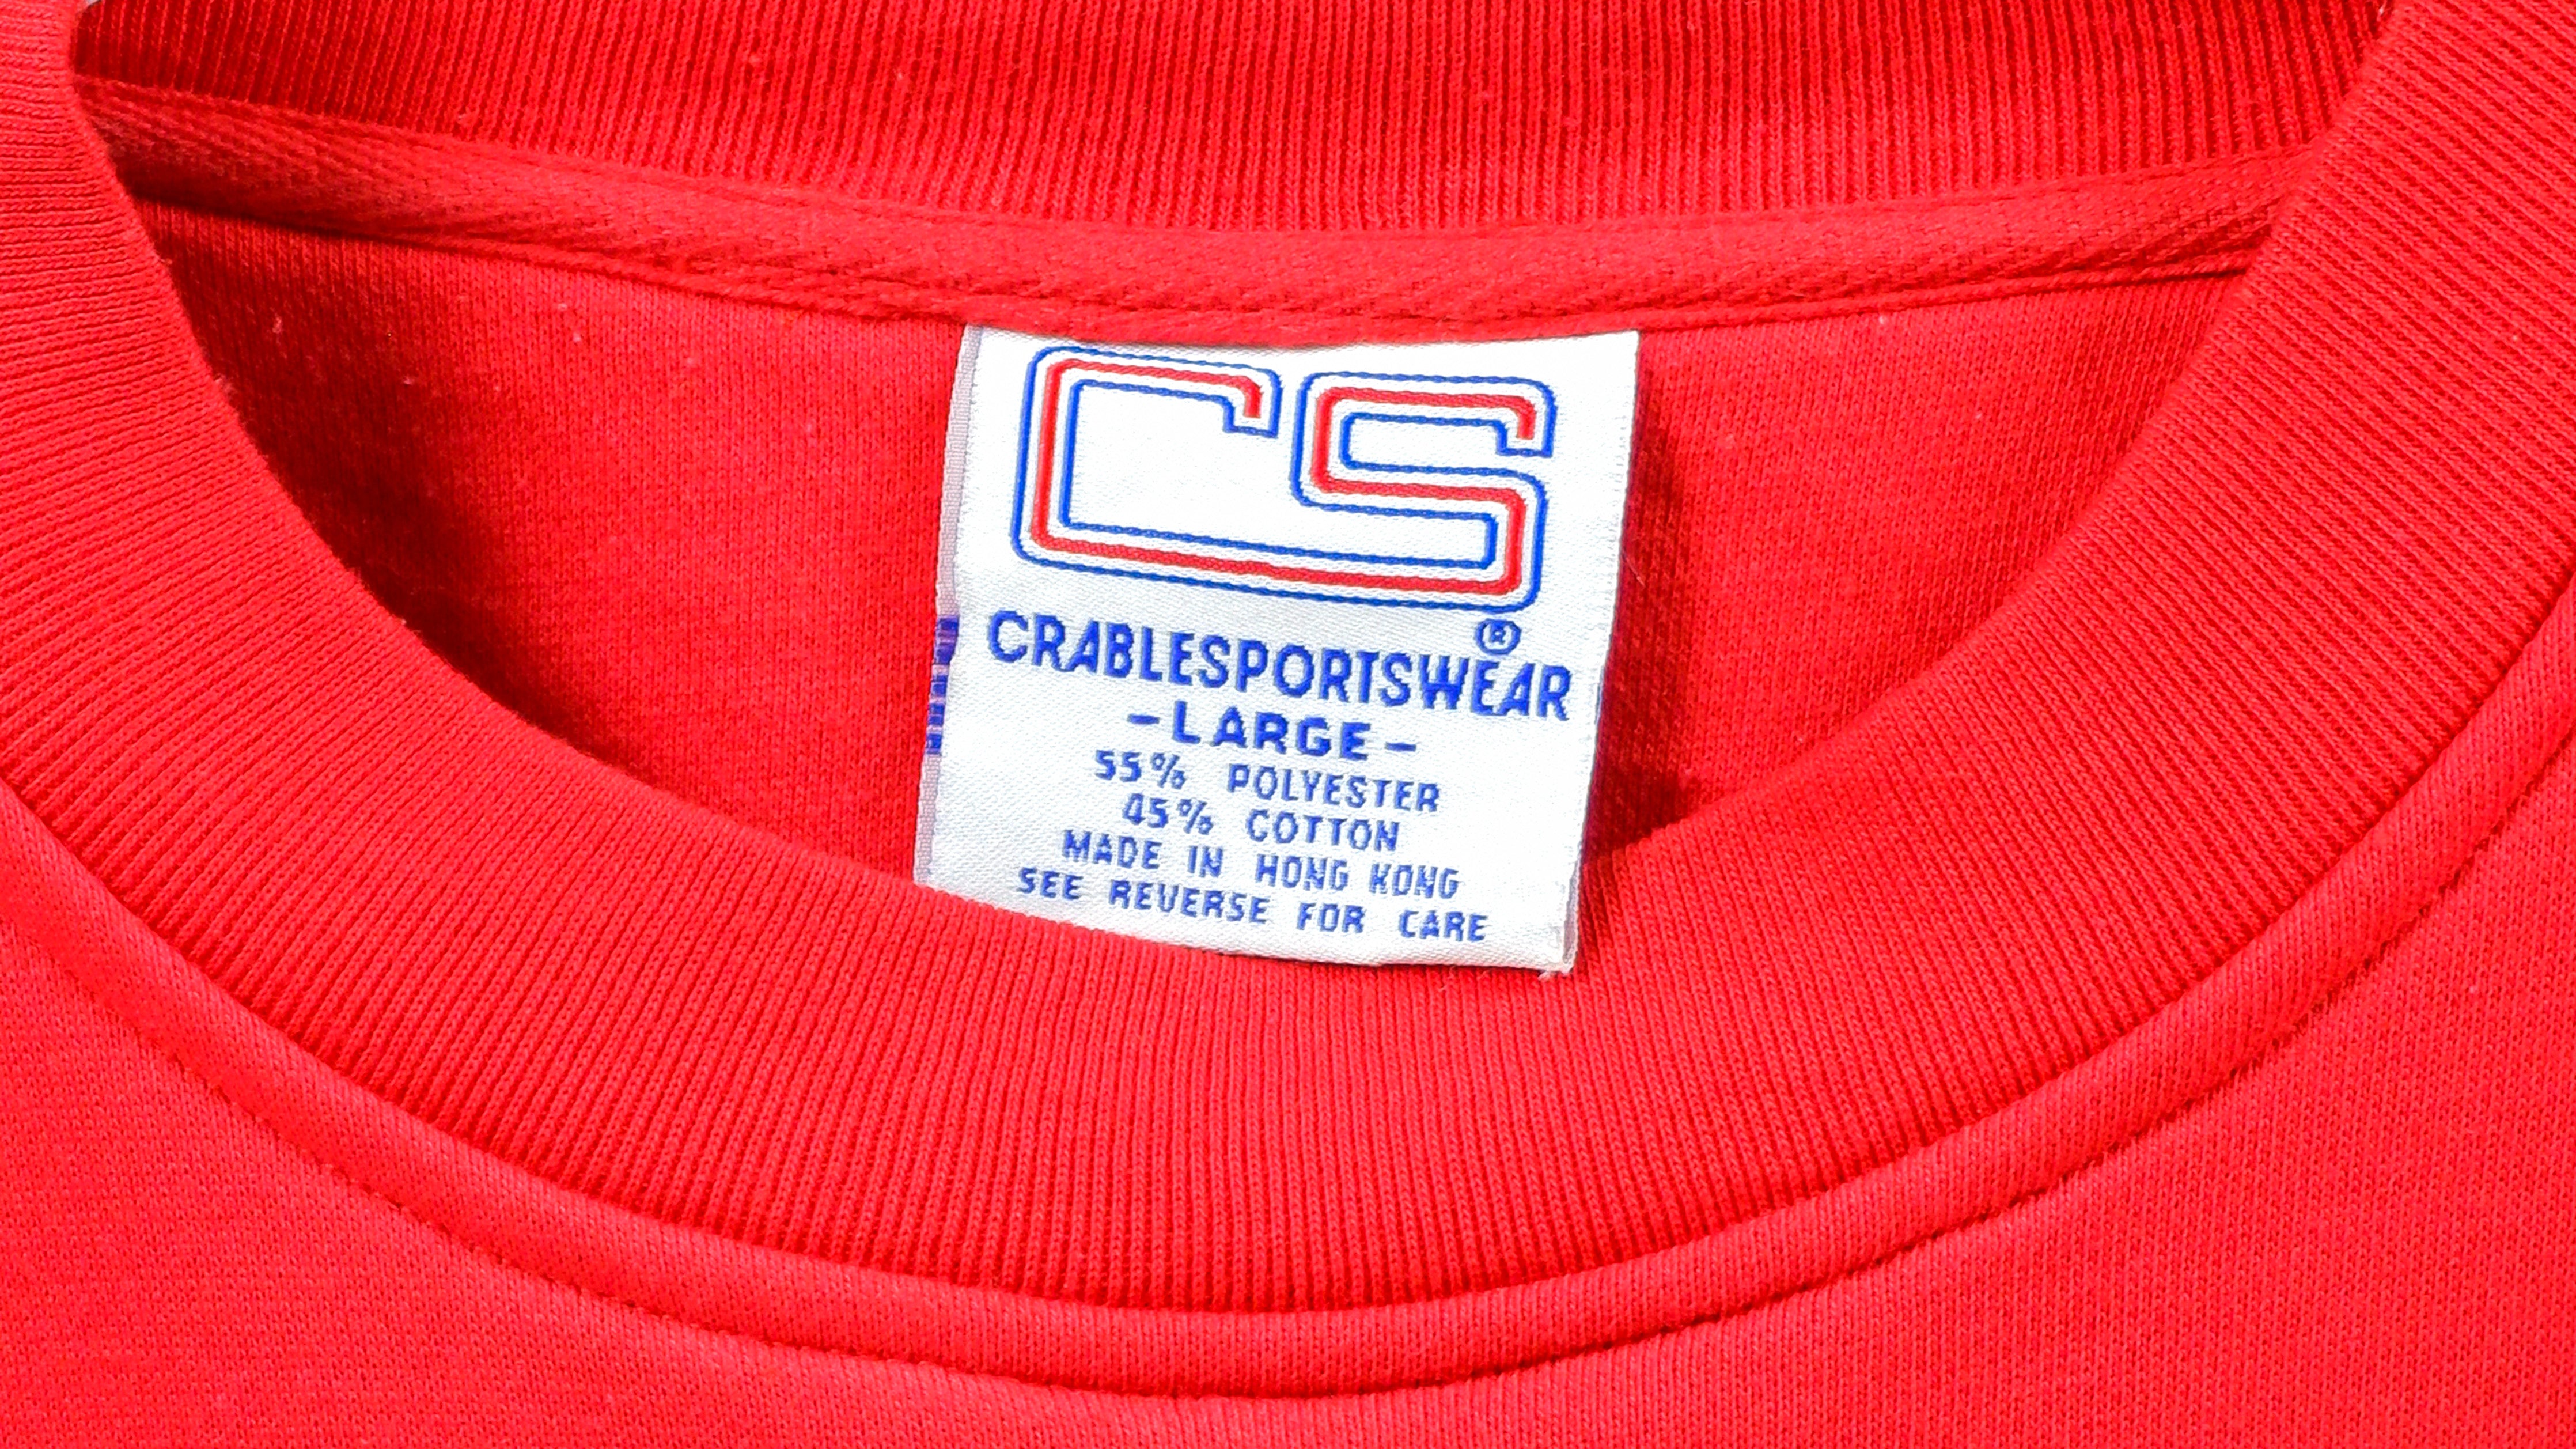 NCAA Louisville Cardinals Embroidered Sweatshirt, Louisville